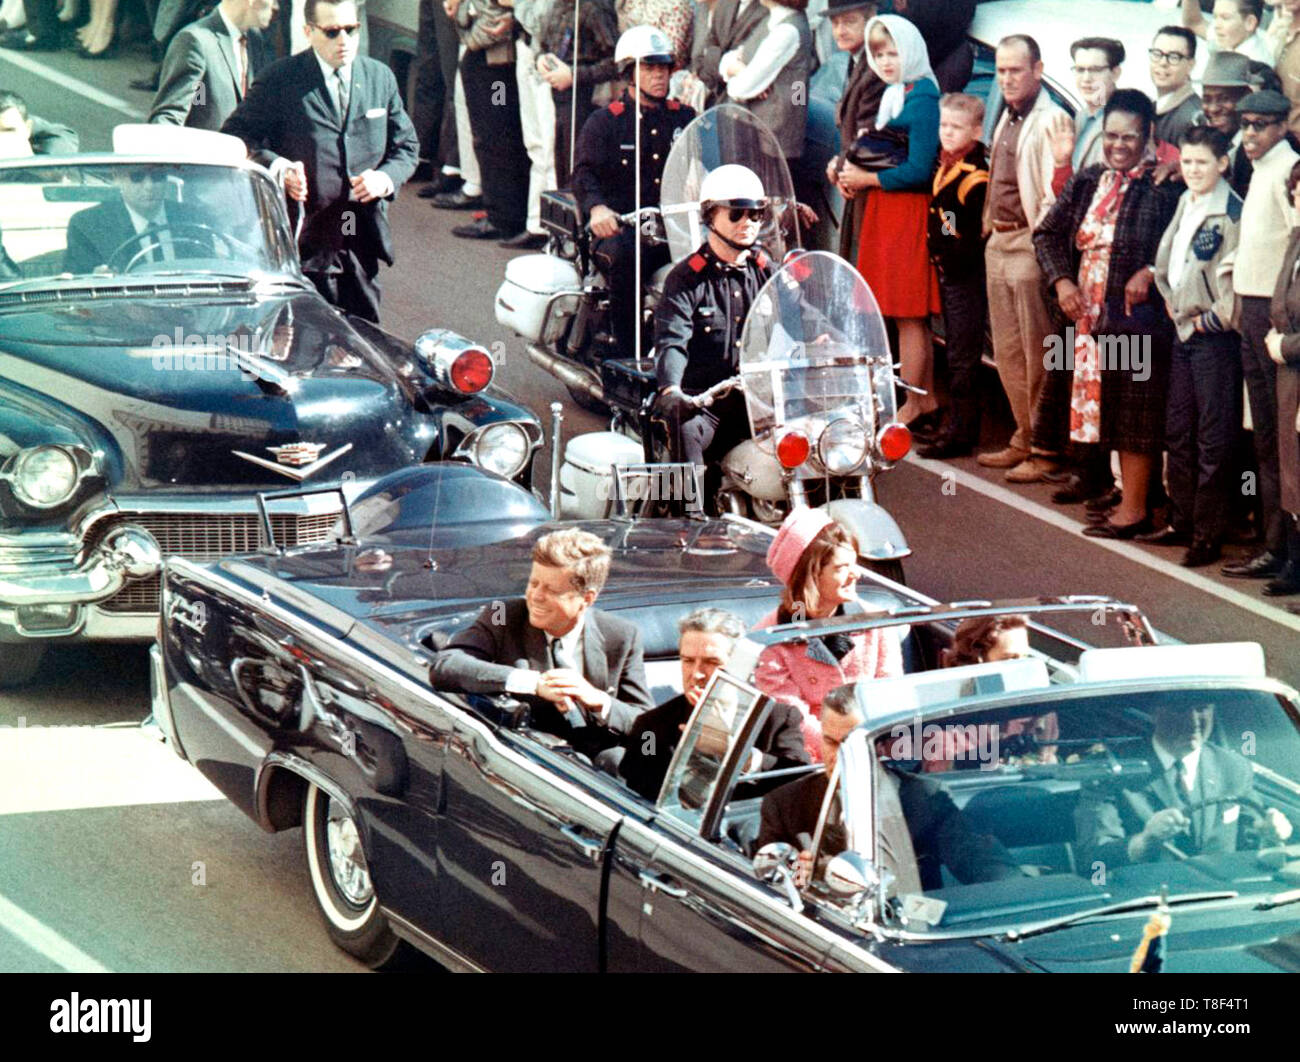 Bild von Präsident Kennedy in der Limousine in Dallas, Texas, auf der Main Street, Minuten vor dem Mord. Auch in der präsidentenwagen sind Jackie Kennedy, Texas Gouverneur John Connally, und seine Frau, Nellie. November 22, 1963 Stockfoto